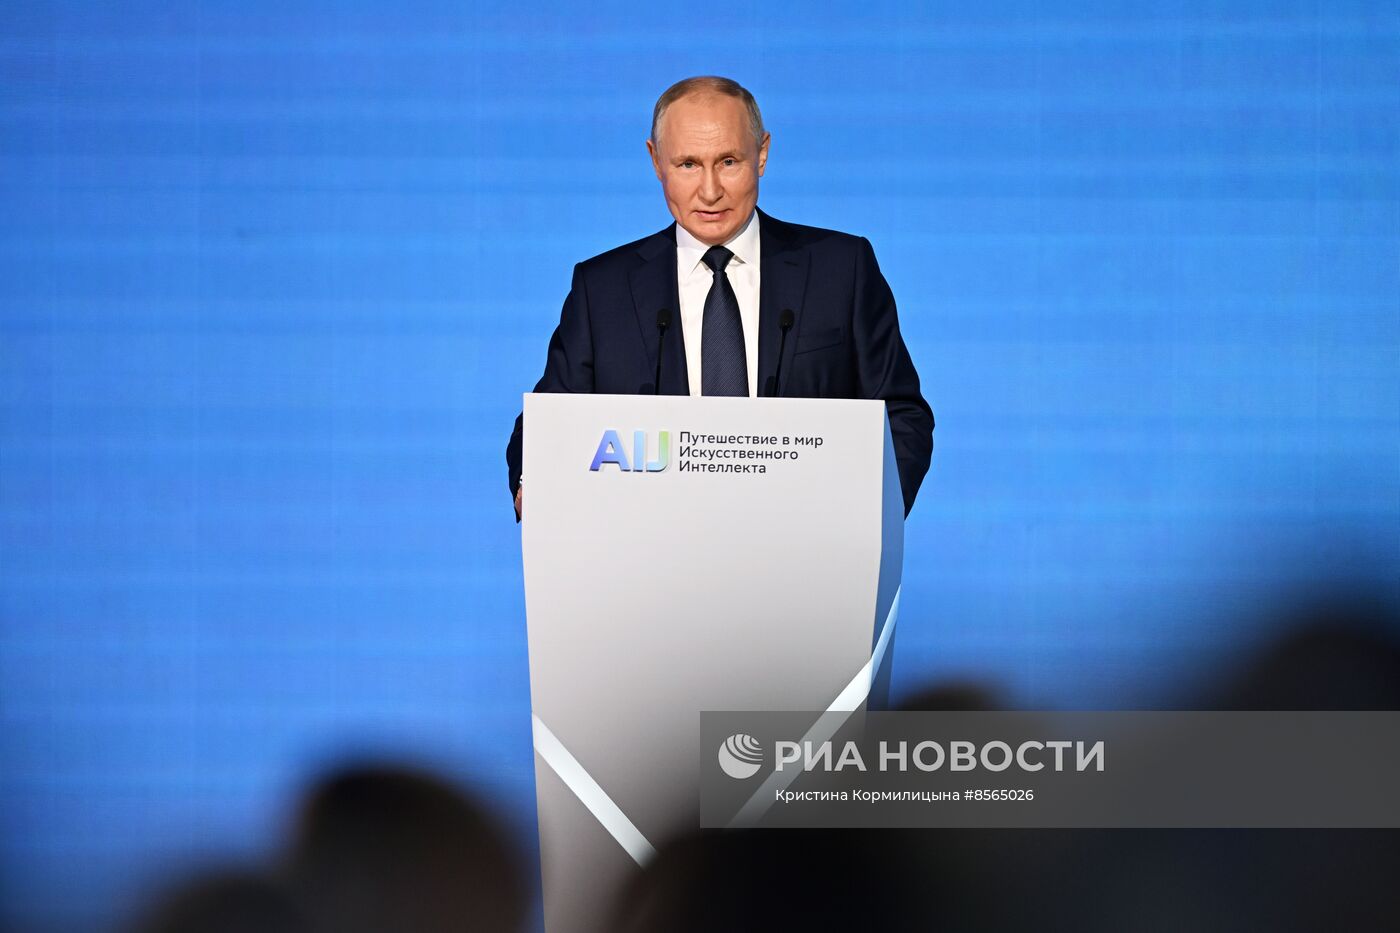 Президент РФ В. Путин посетил конференцию по искусственному интеллекту AI Journey